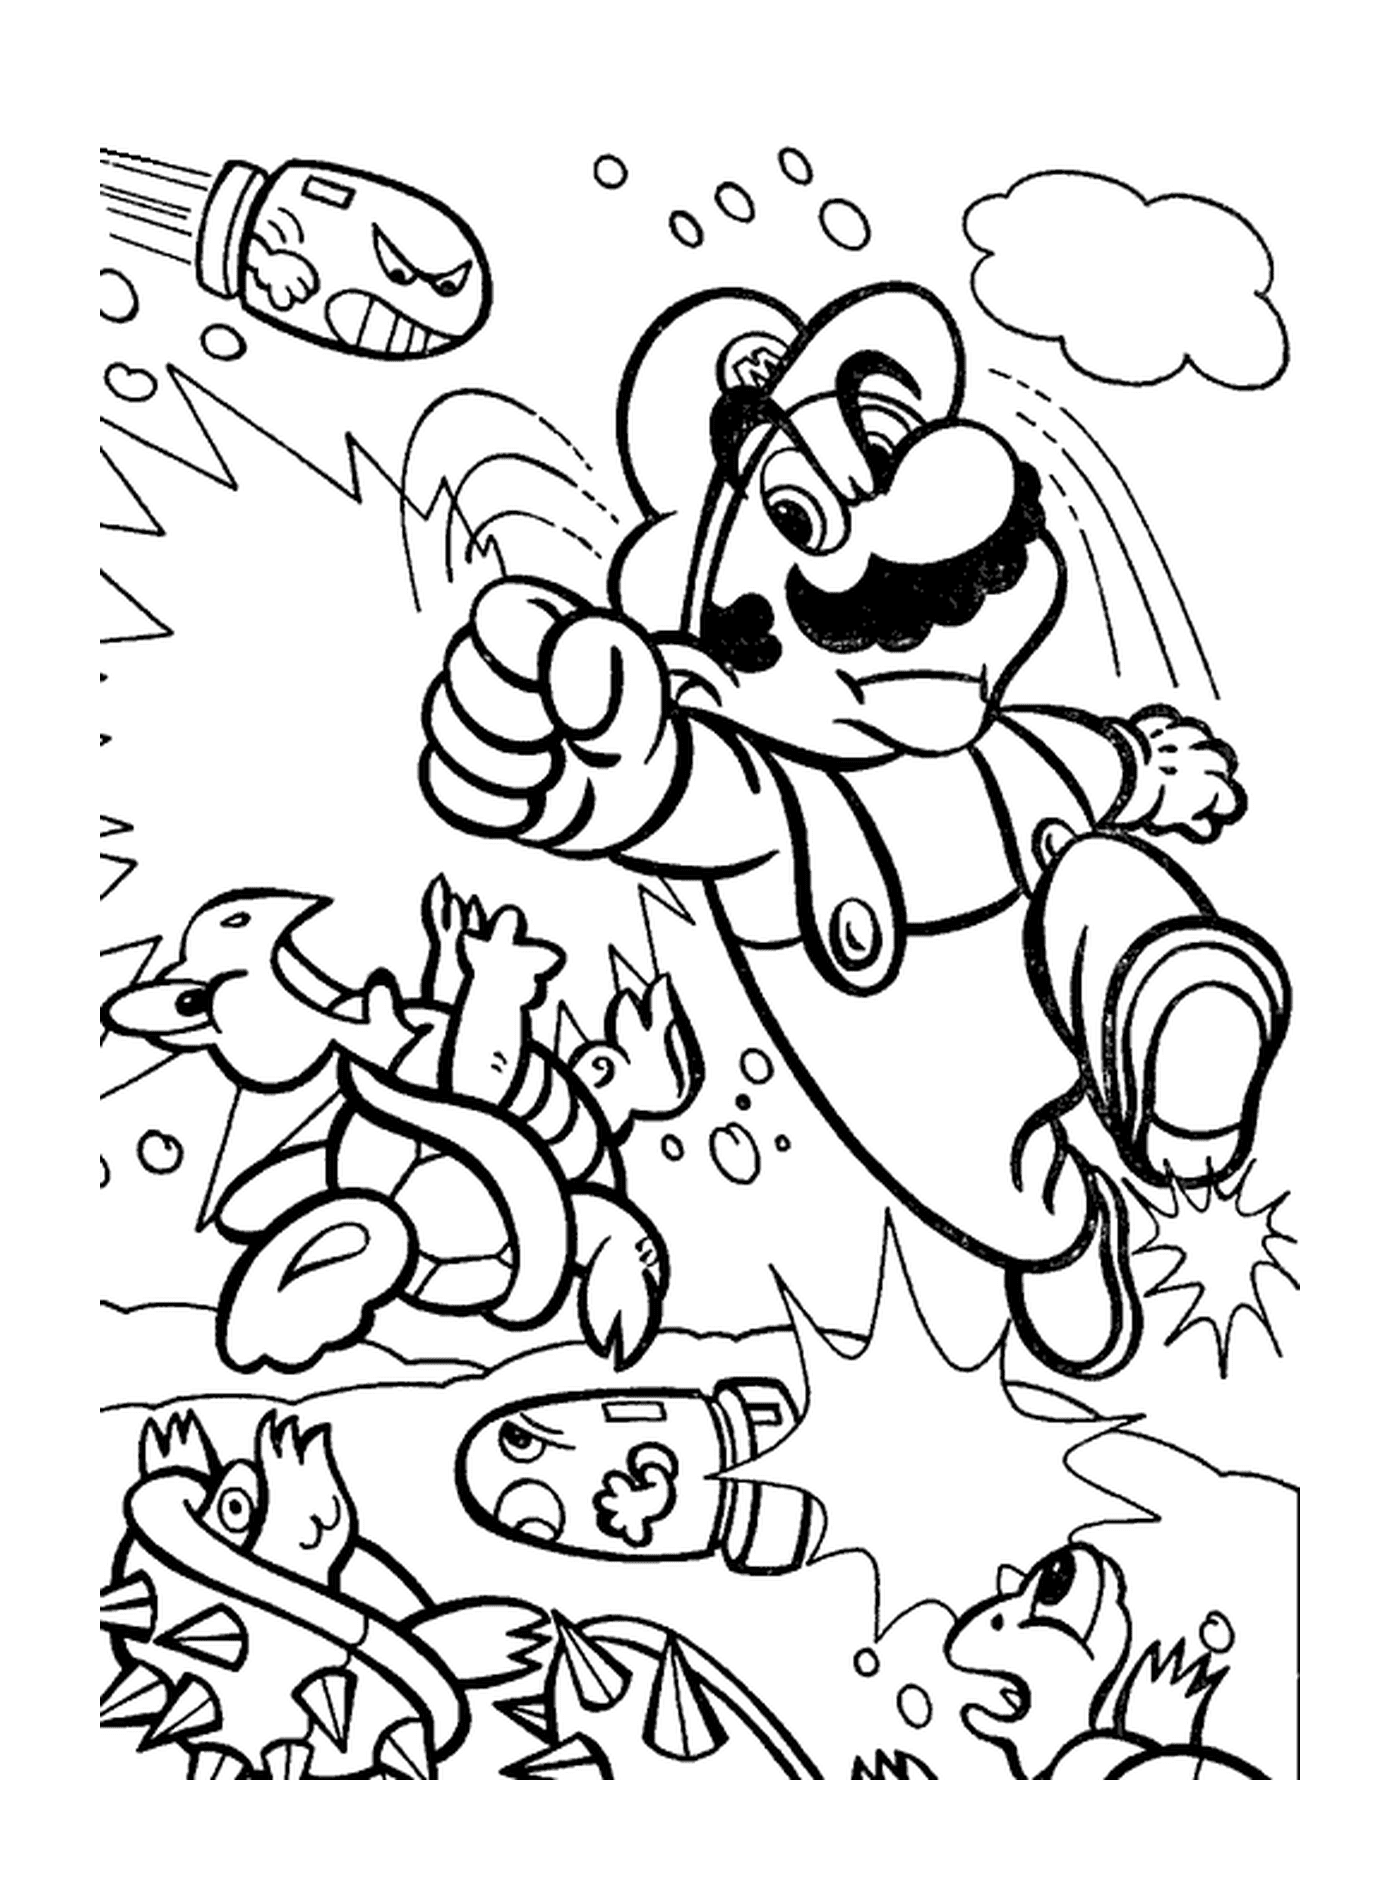  Mario kämpft, indem er in die Luft springt 